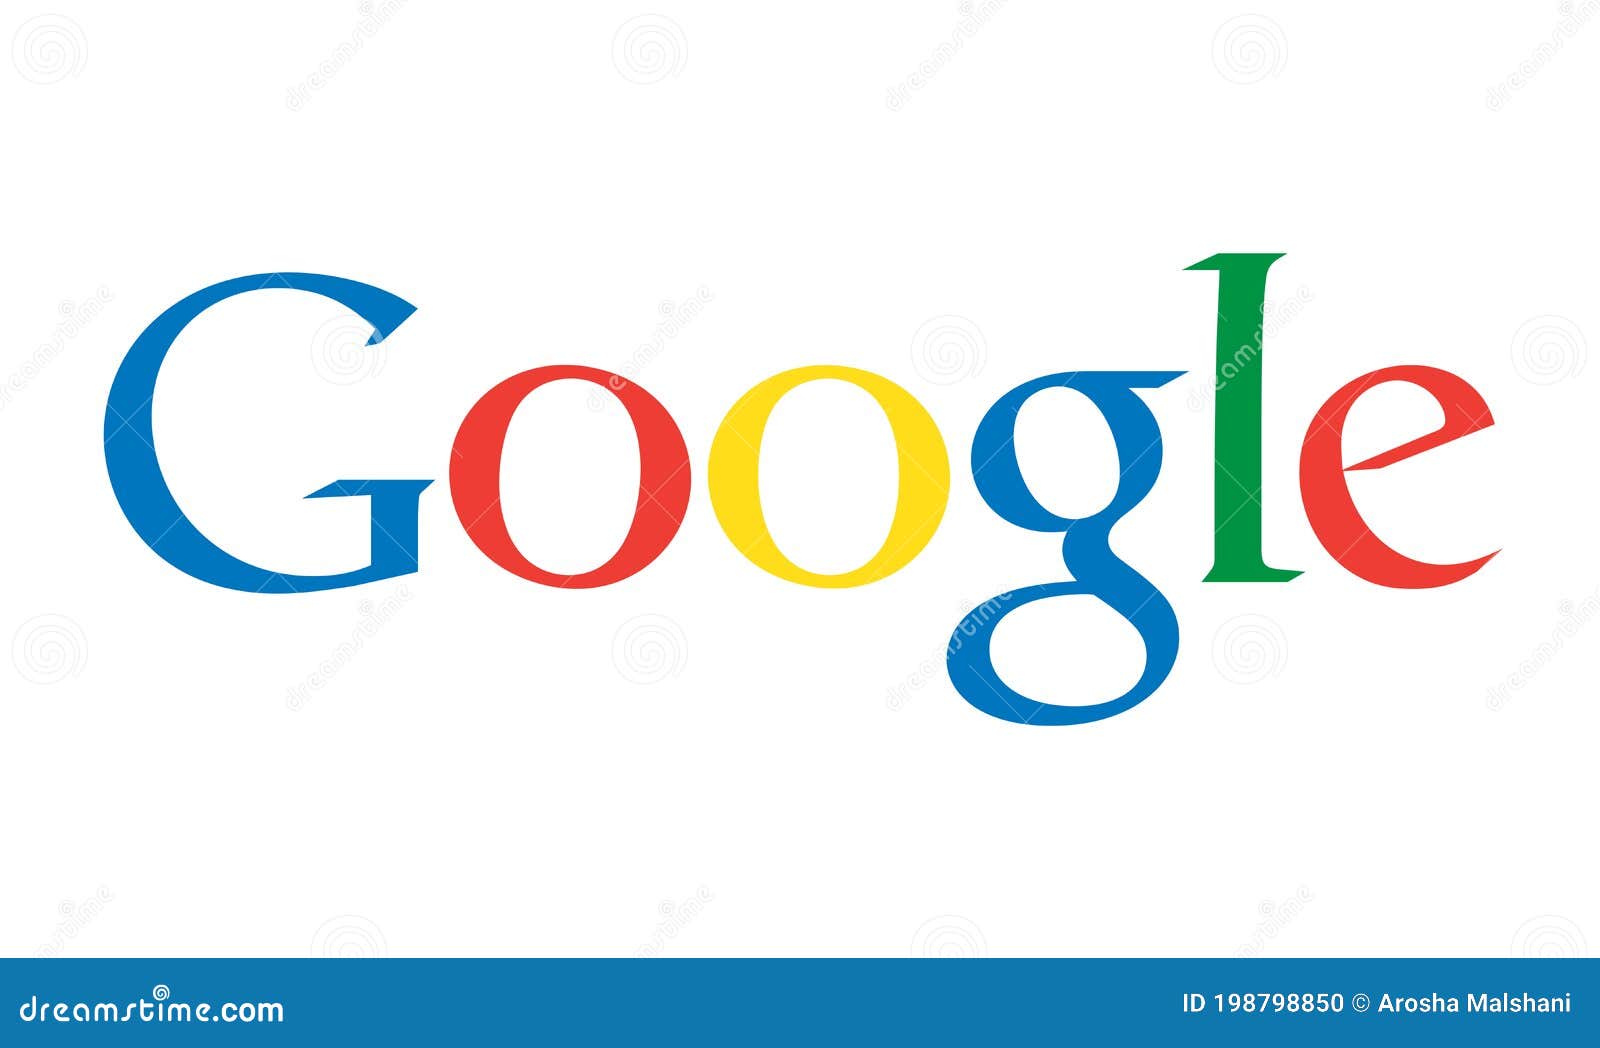 Google Logo Icon. Isolated on White Background. Editorial Image ...